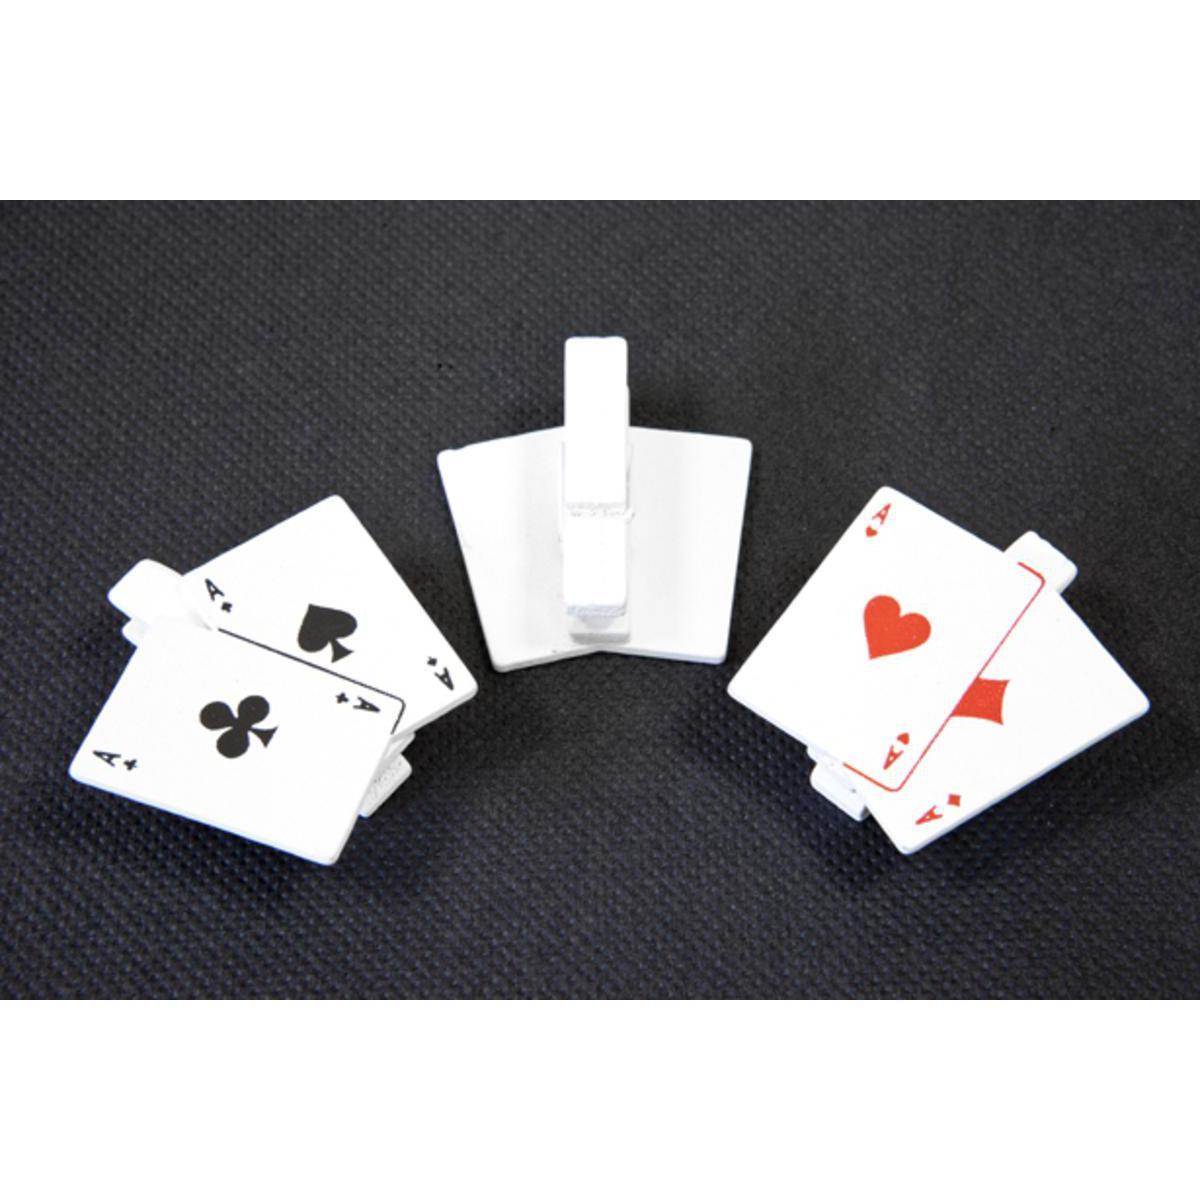 6 pinces cartes de jeu - Bois - 4 x 3,8 cm - Noir, blanc et rouge